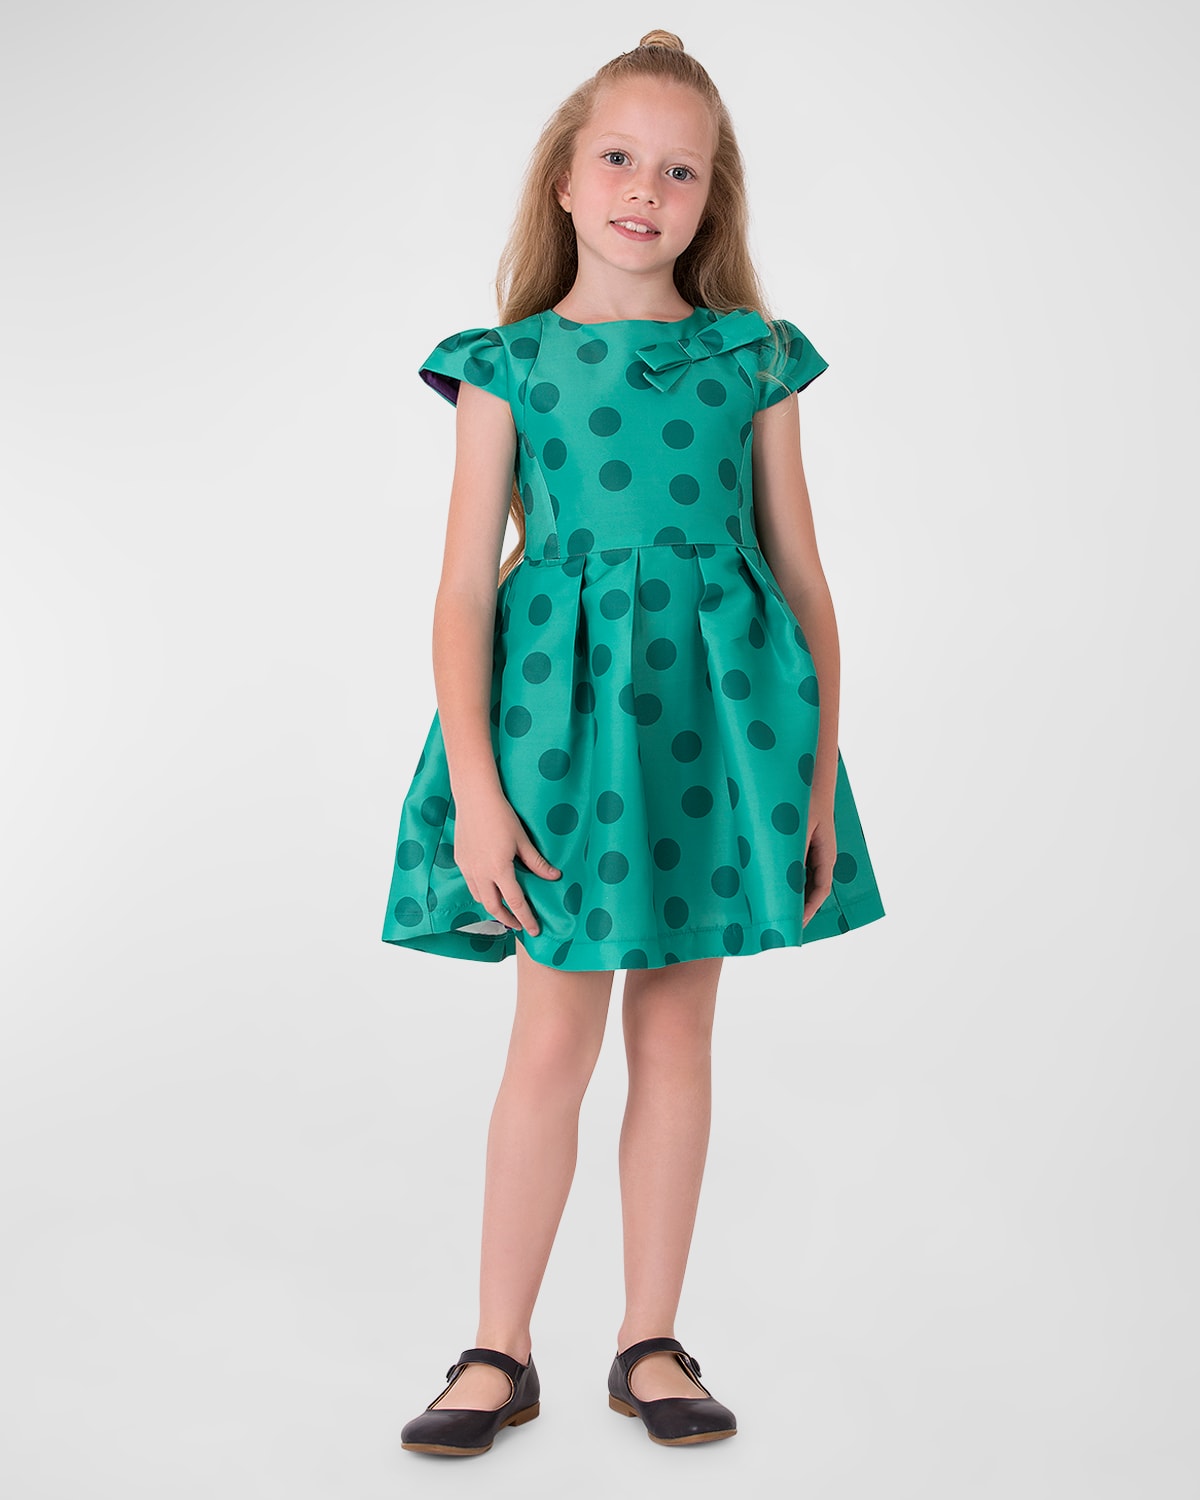 Mama Luma Kids' Girl's Polka Dot Bow Dress In Green